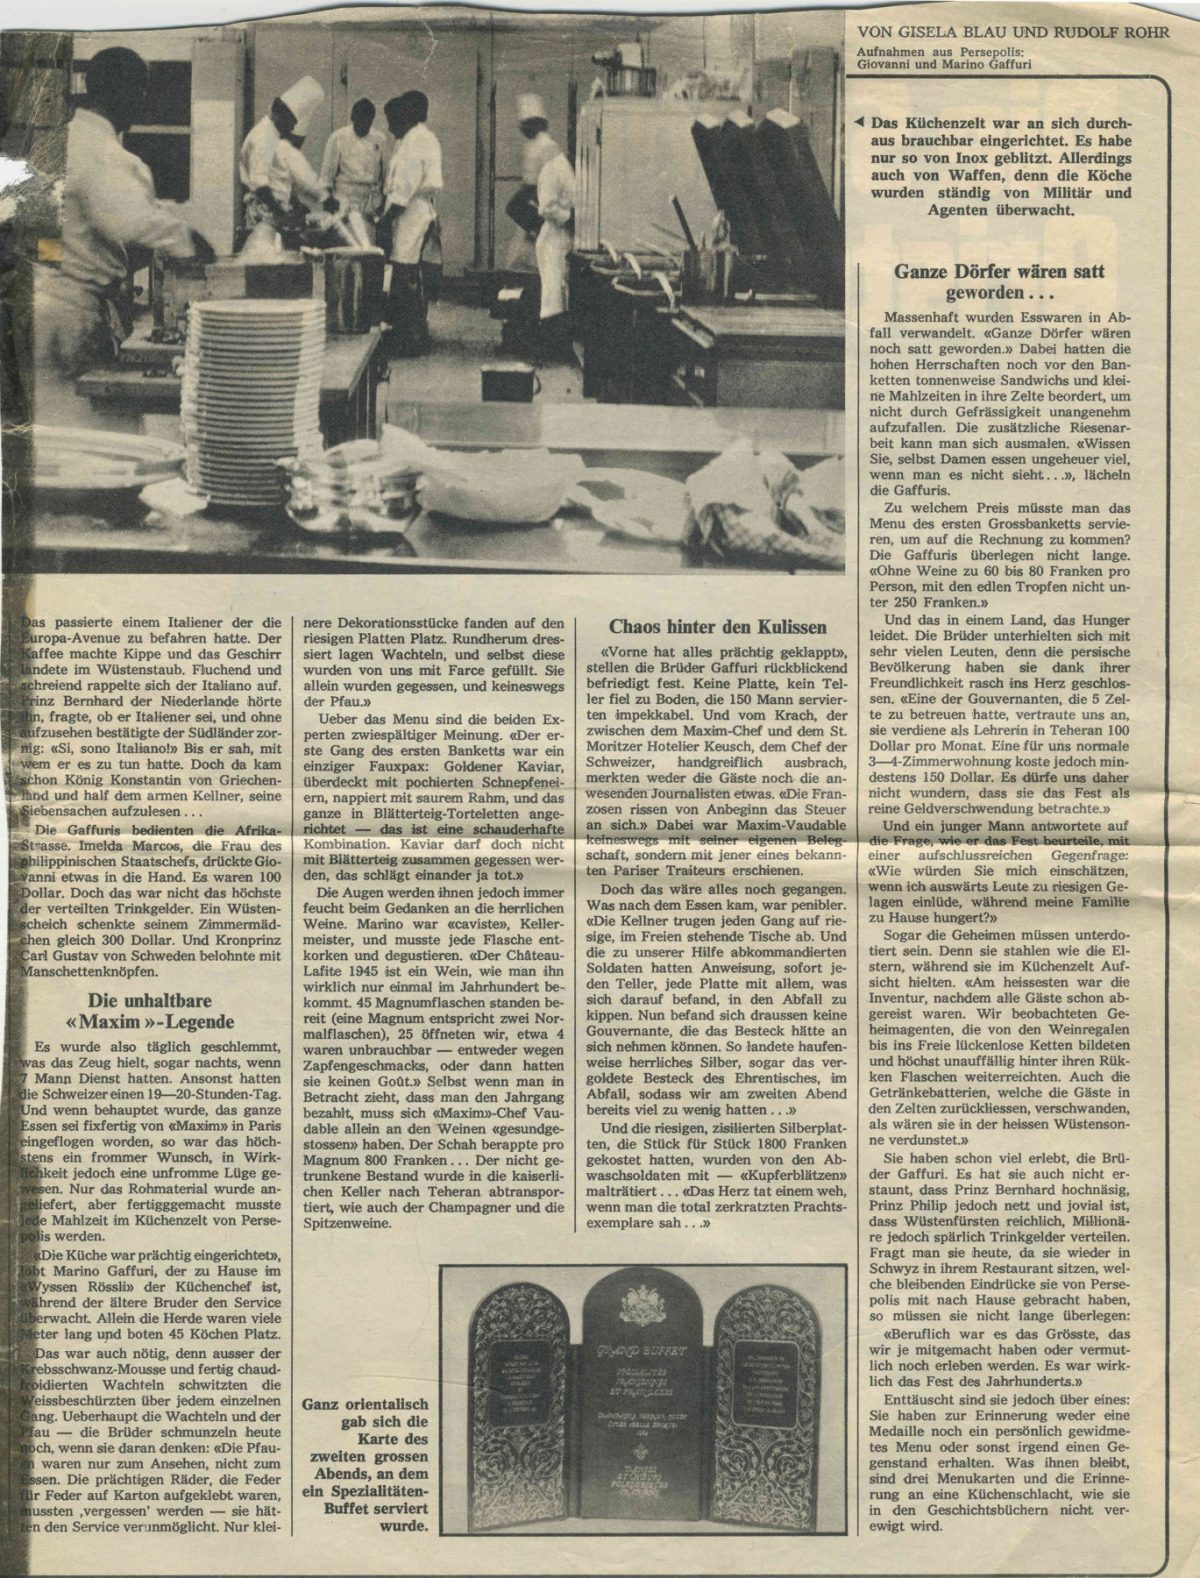 Schweizer Presseartikel über die Feier des Schahs von Persien in Persepolis im Oktober 1971